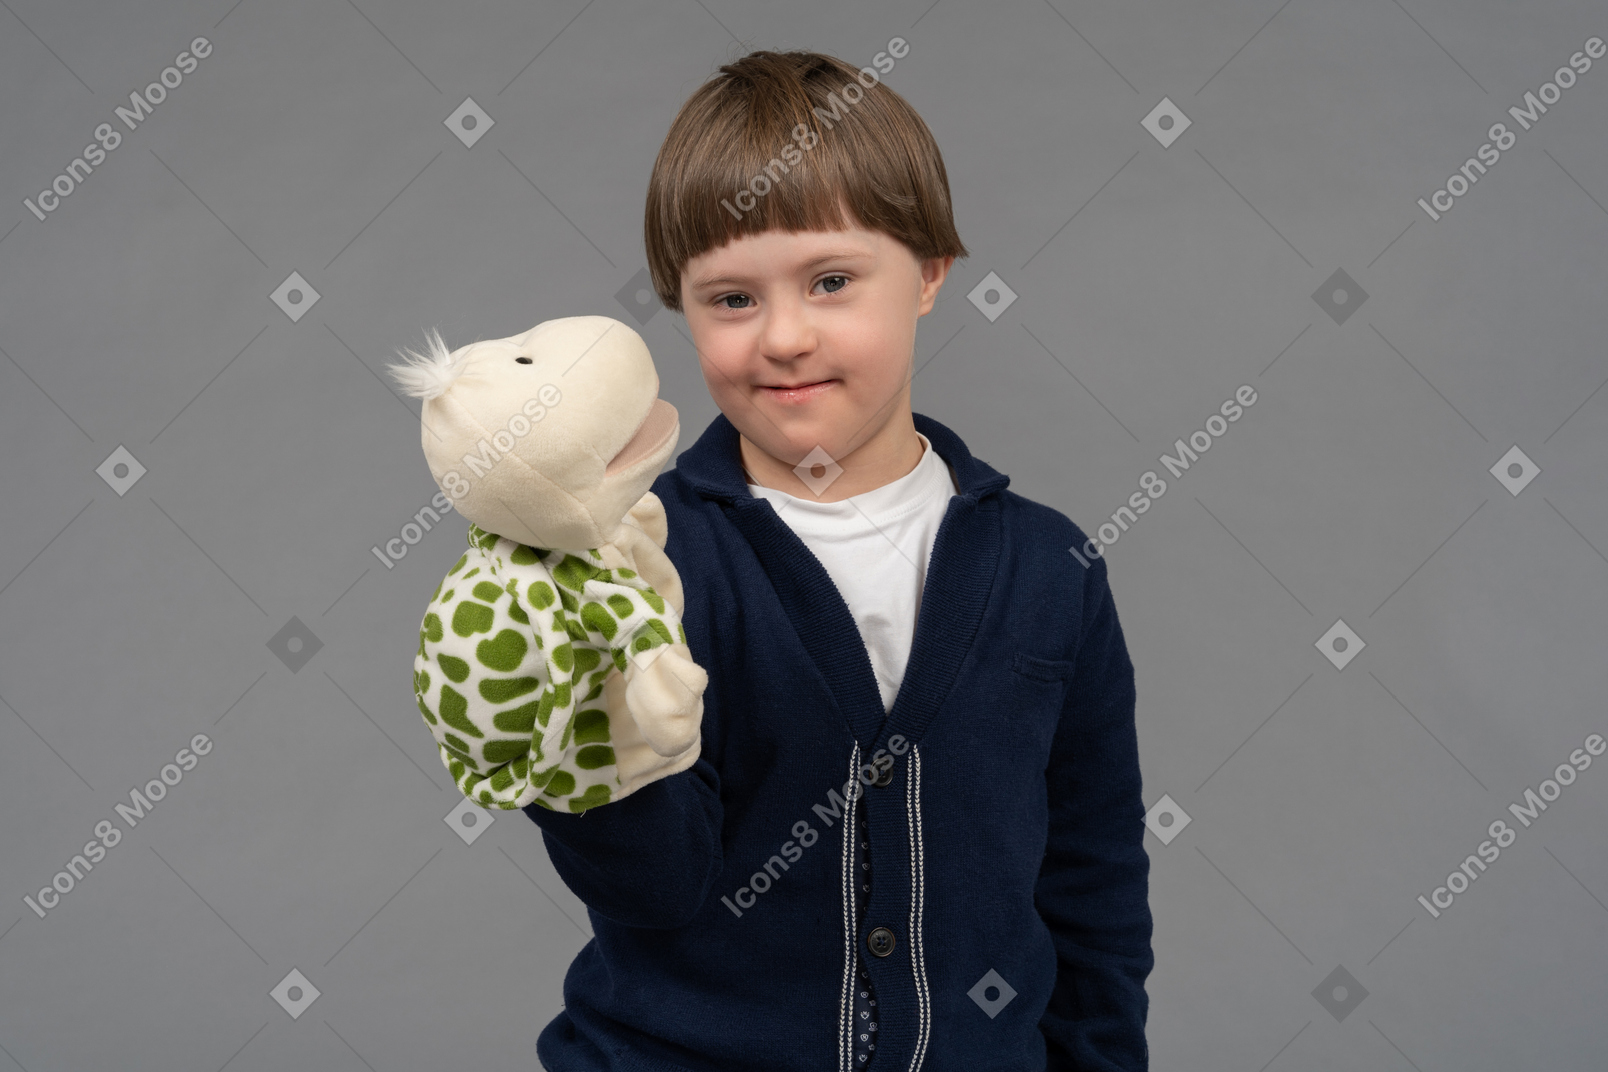 Porträt eines kleinen jungen, der eine schildkrötenpuppe hält